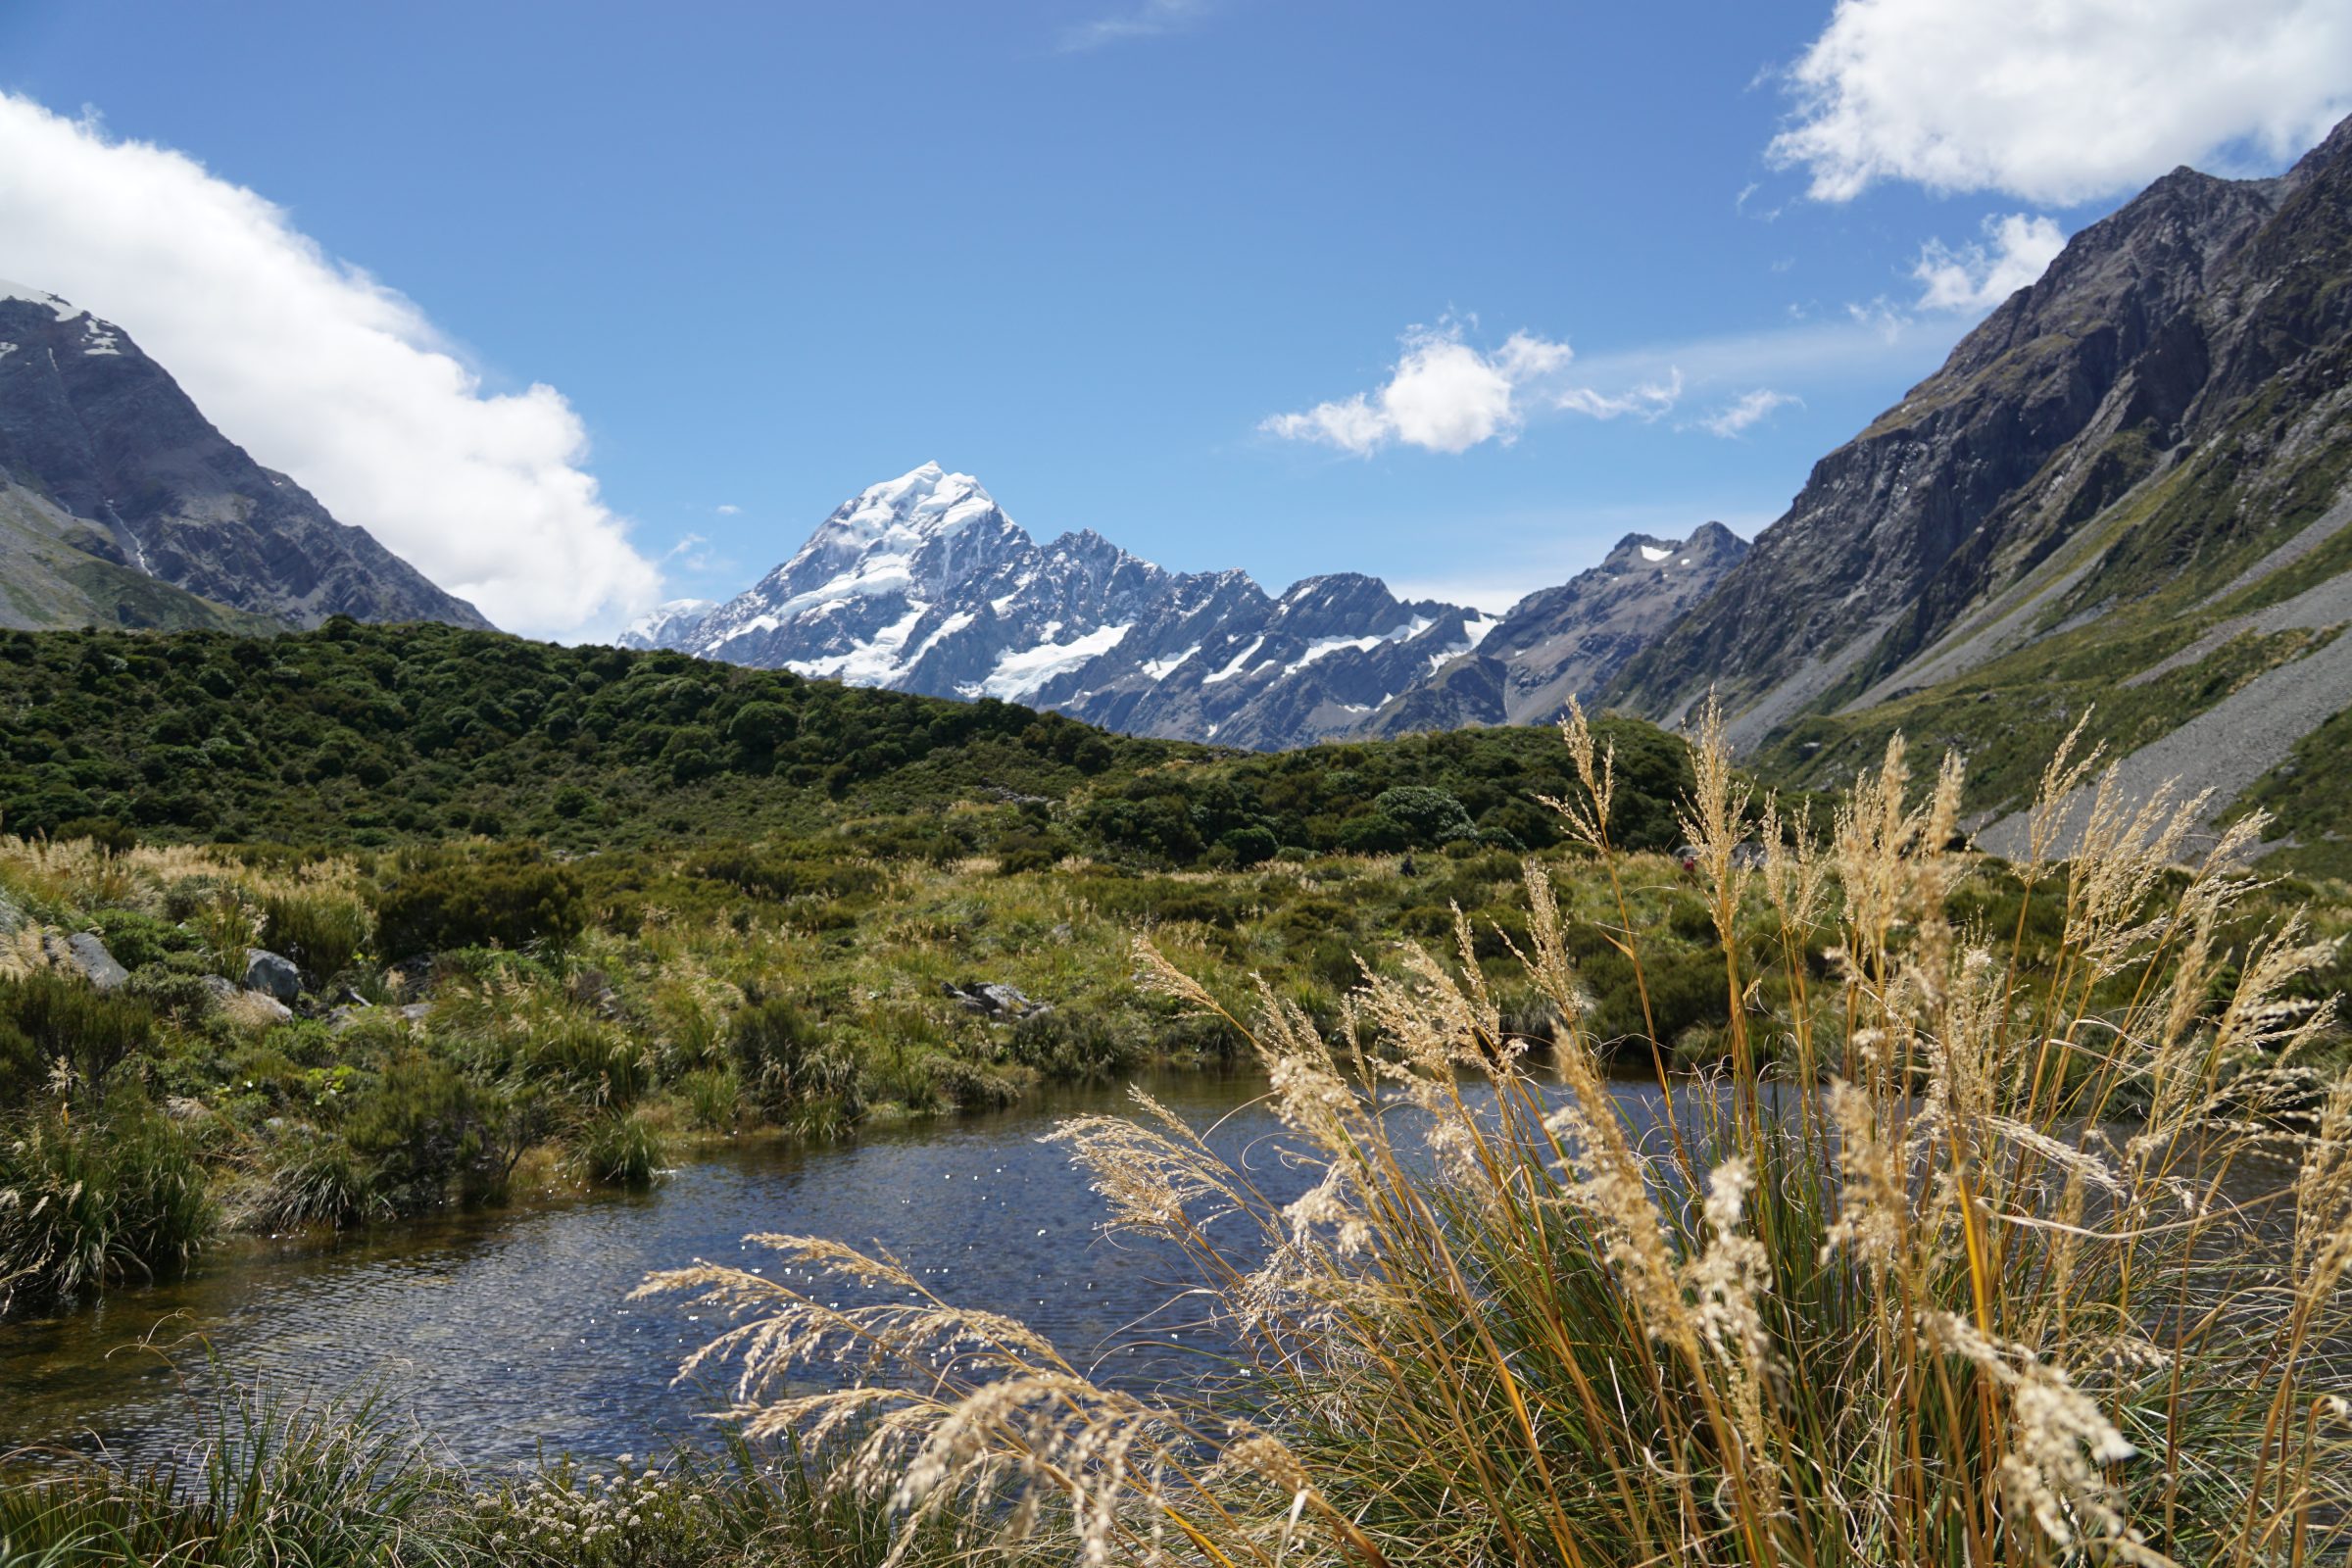 Uitizcht op Mount Cook gedurende de Hooker Valley Track | Hiken Lake Tekapo en Mount Cook